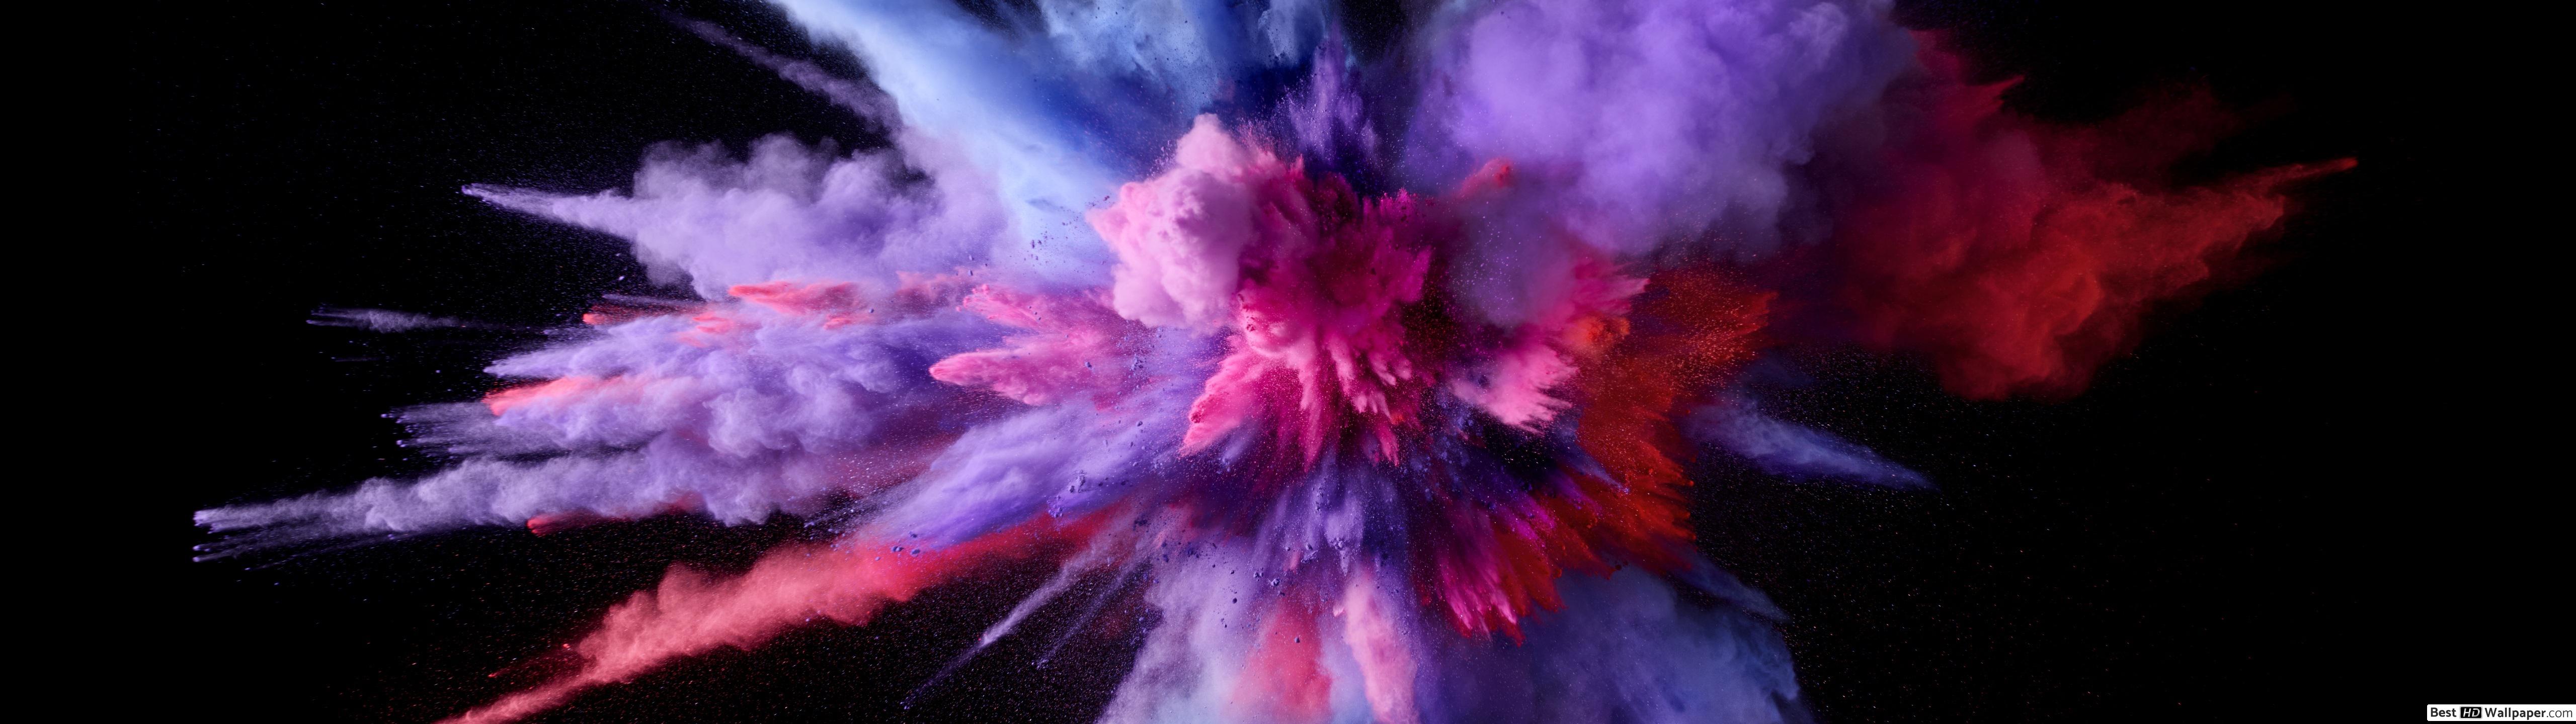 Bộ hình nền Colorful Smoke Background Wallpaper sẽ khiến bạn cảm thấy mê hoặc bởi sự lộng lẫy và sáng tạo của nó. Với những gam màu đậm chất sắc màu, chiếc máy tính của bạn sẽ trở nên độc đáo và tuyệt vời hơn bao giờ hết.